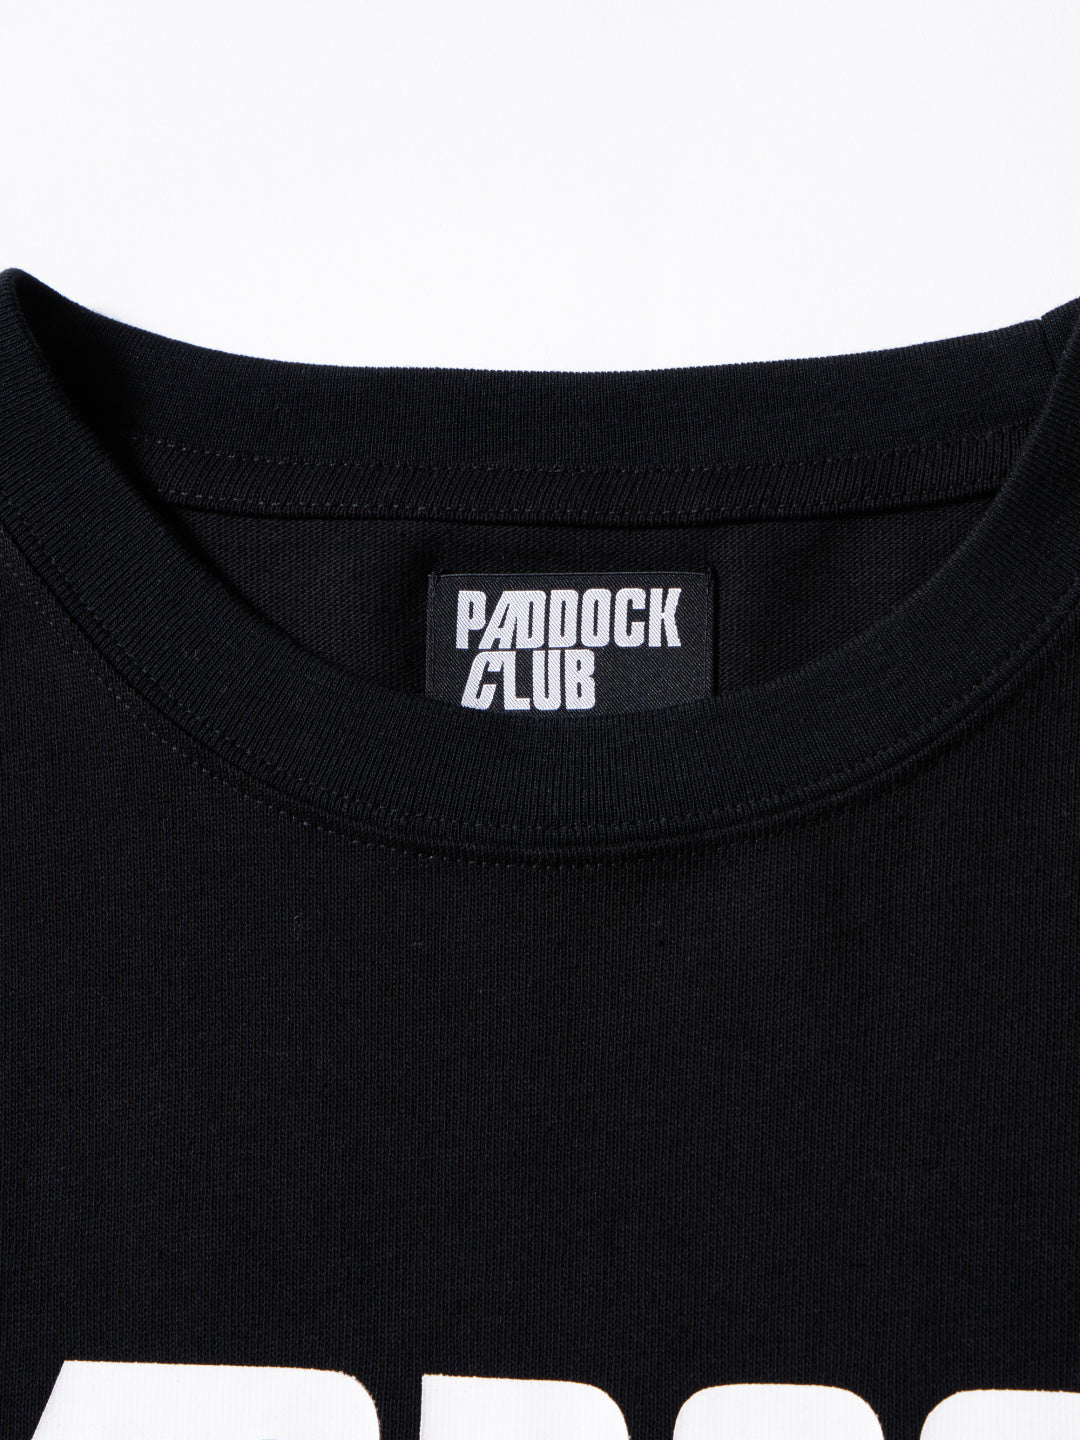 PADDOCK CLUB | PC LOGO TEE - Black